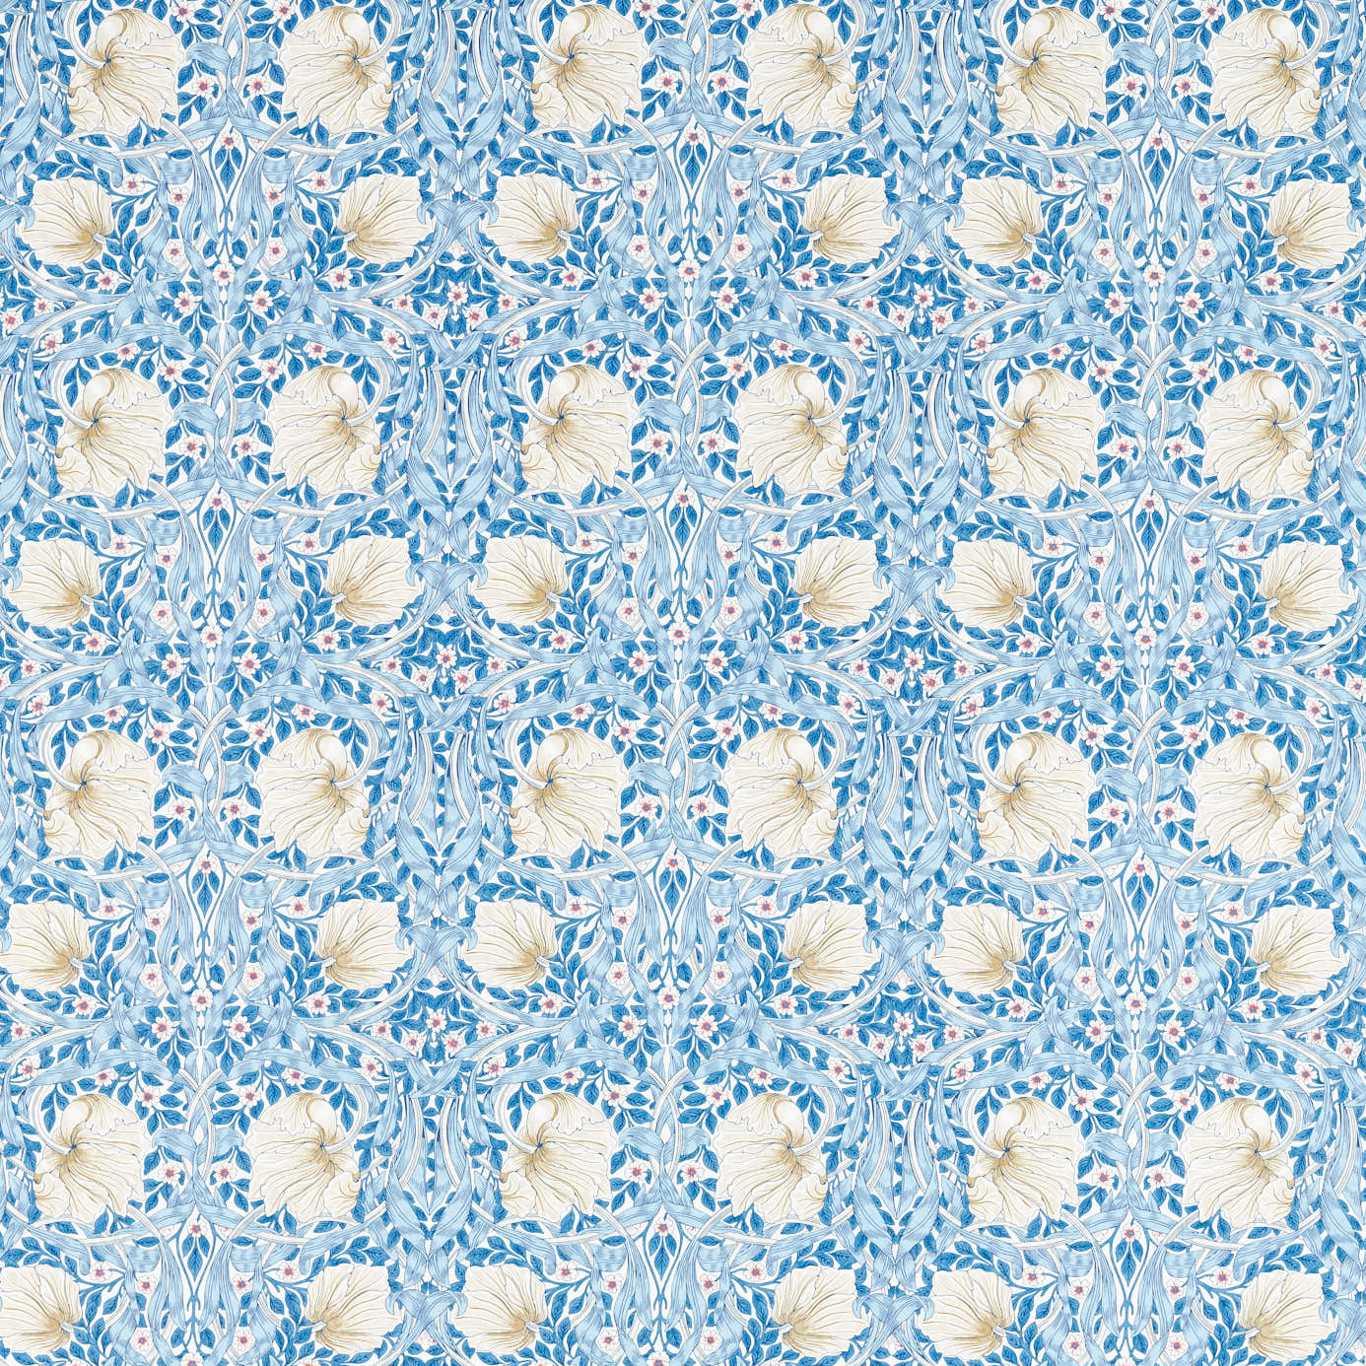 William Morris Fabric- Pimpernel Cotton Linen